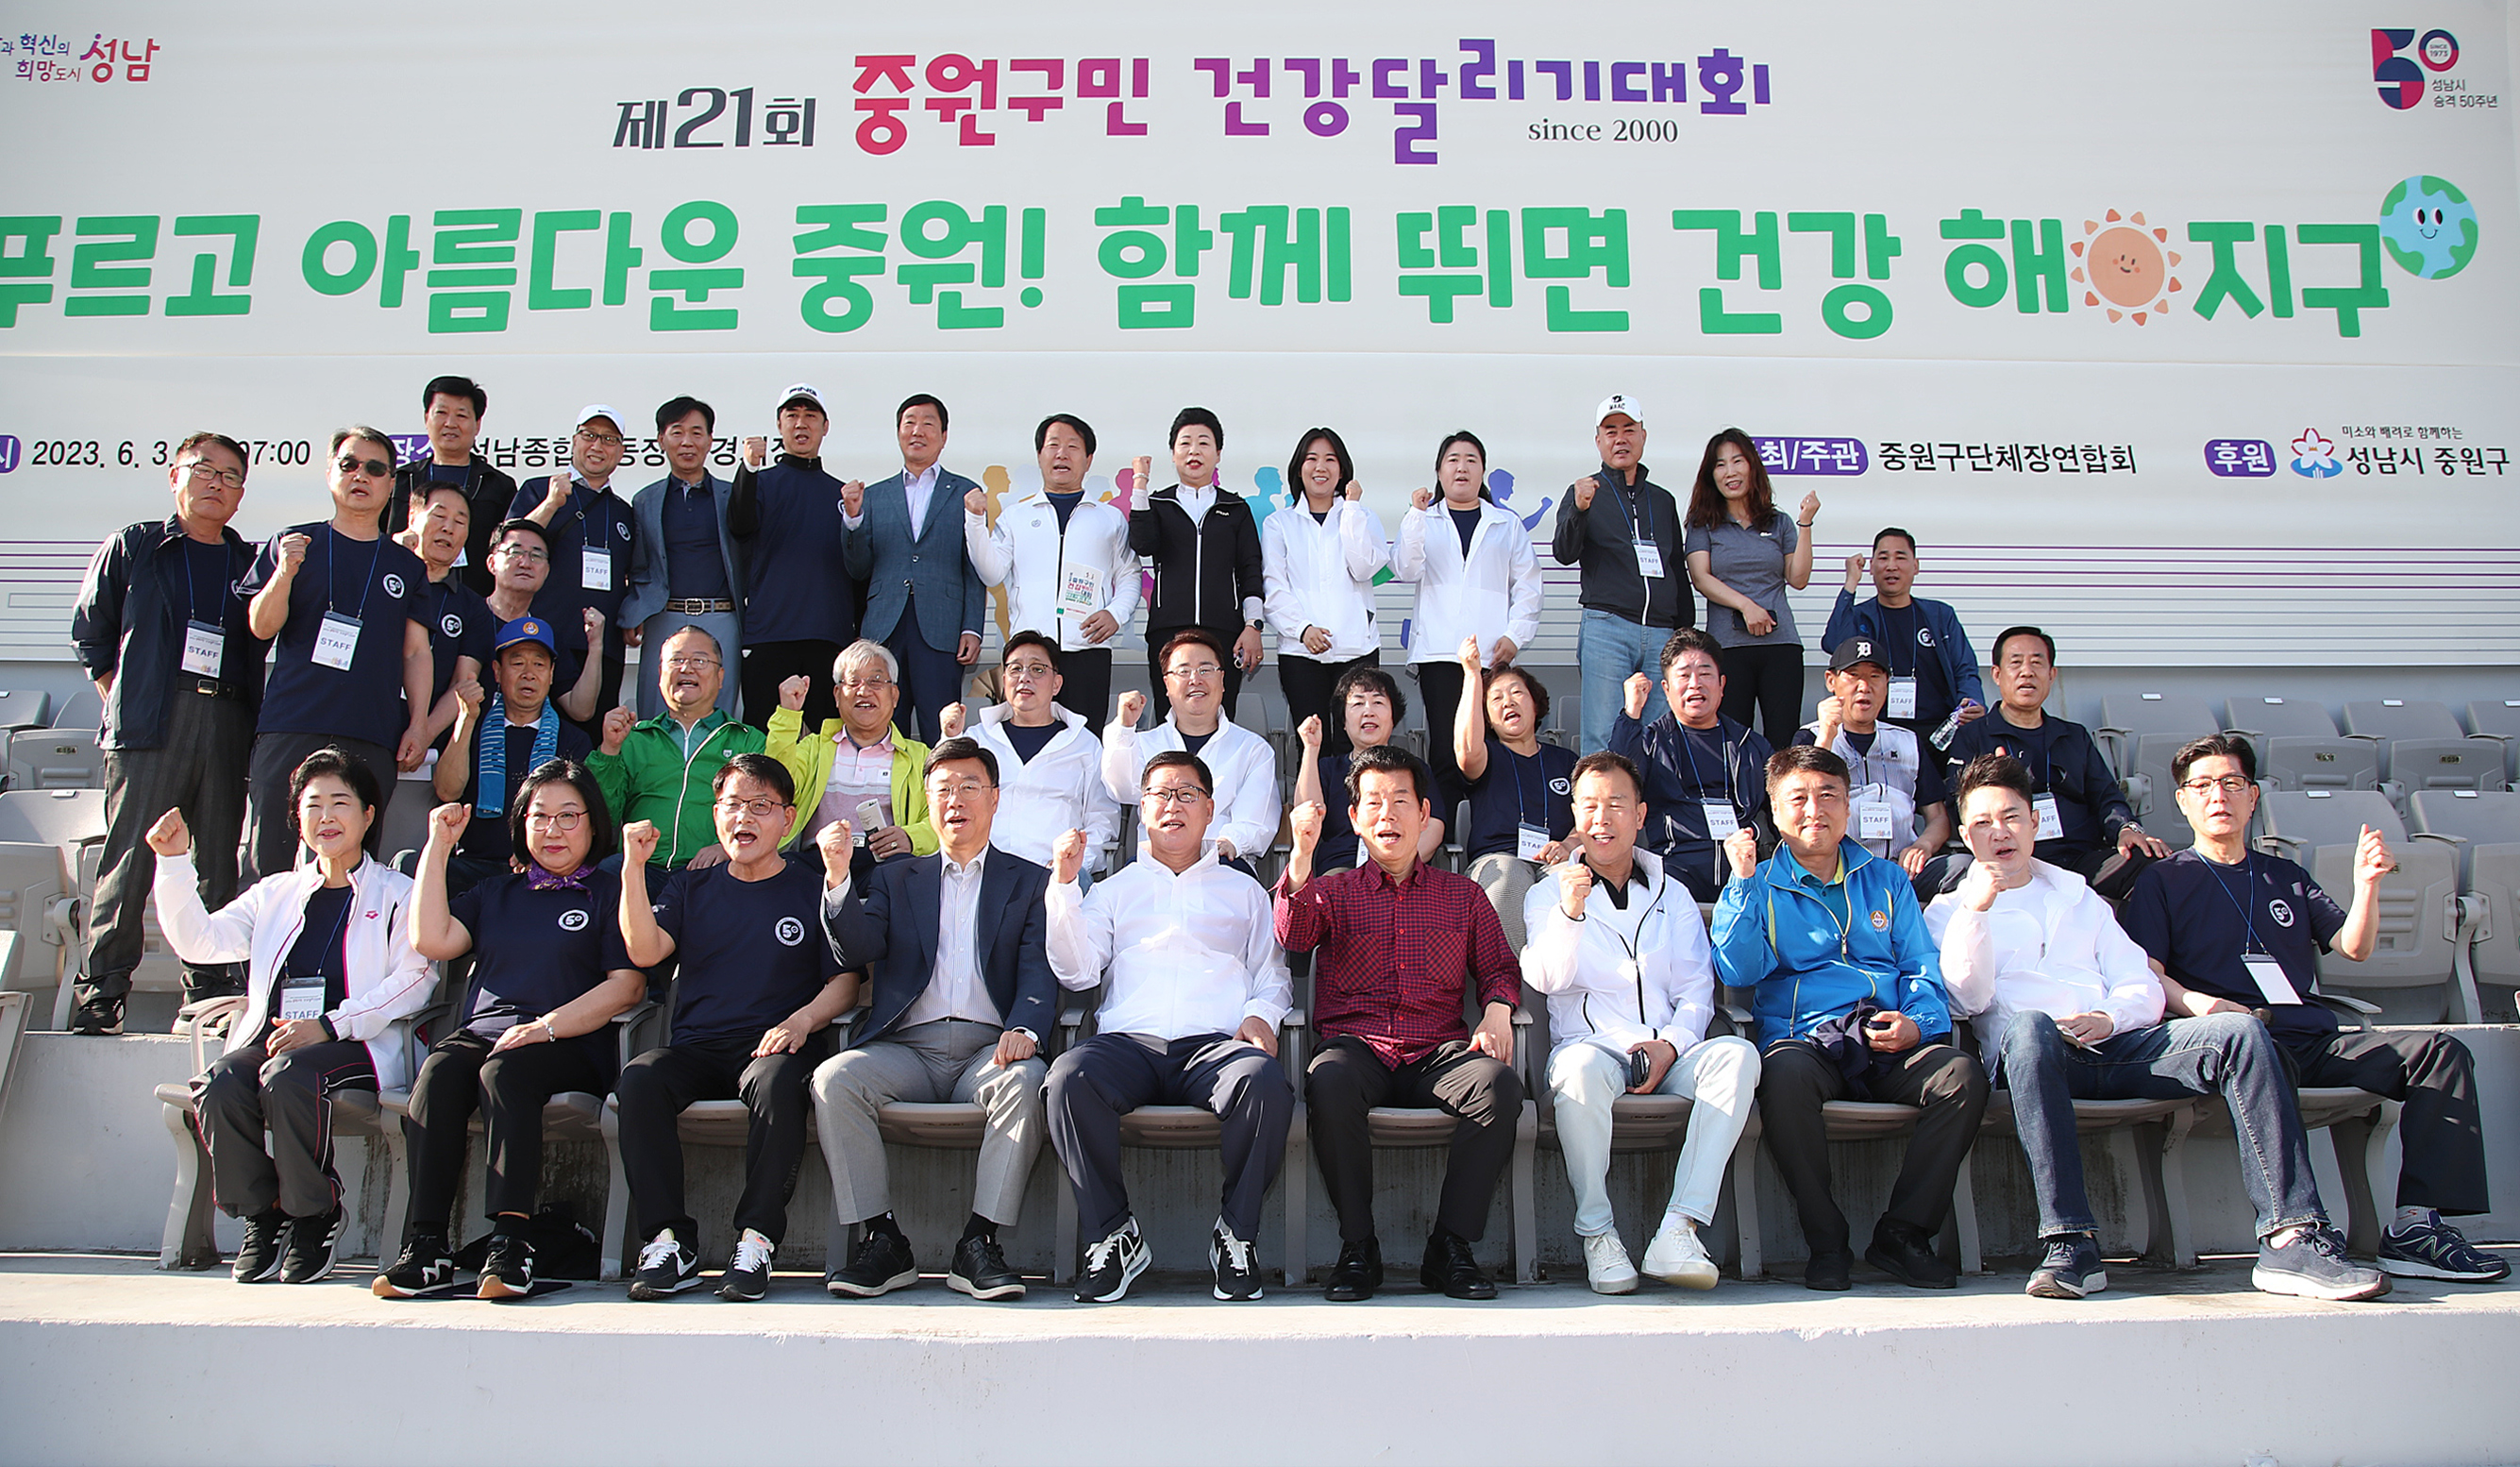  제21회 중원구민 건강달리기대회  - 4